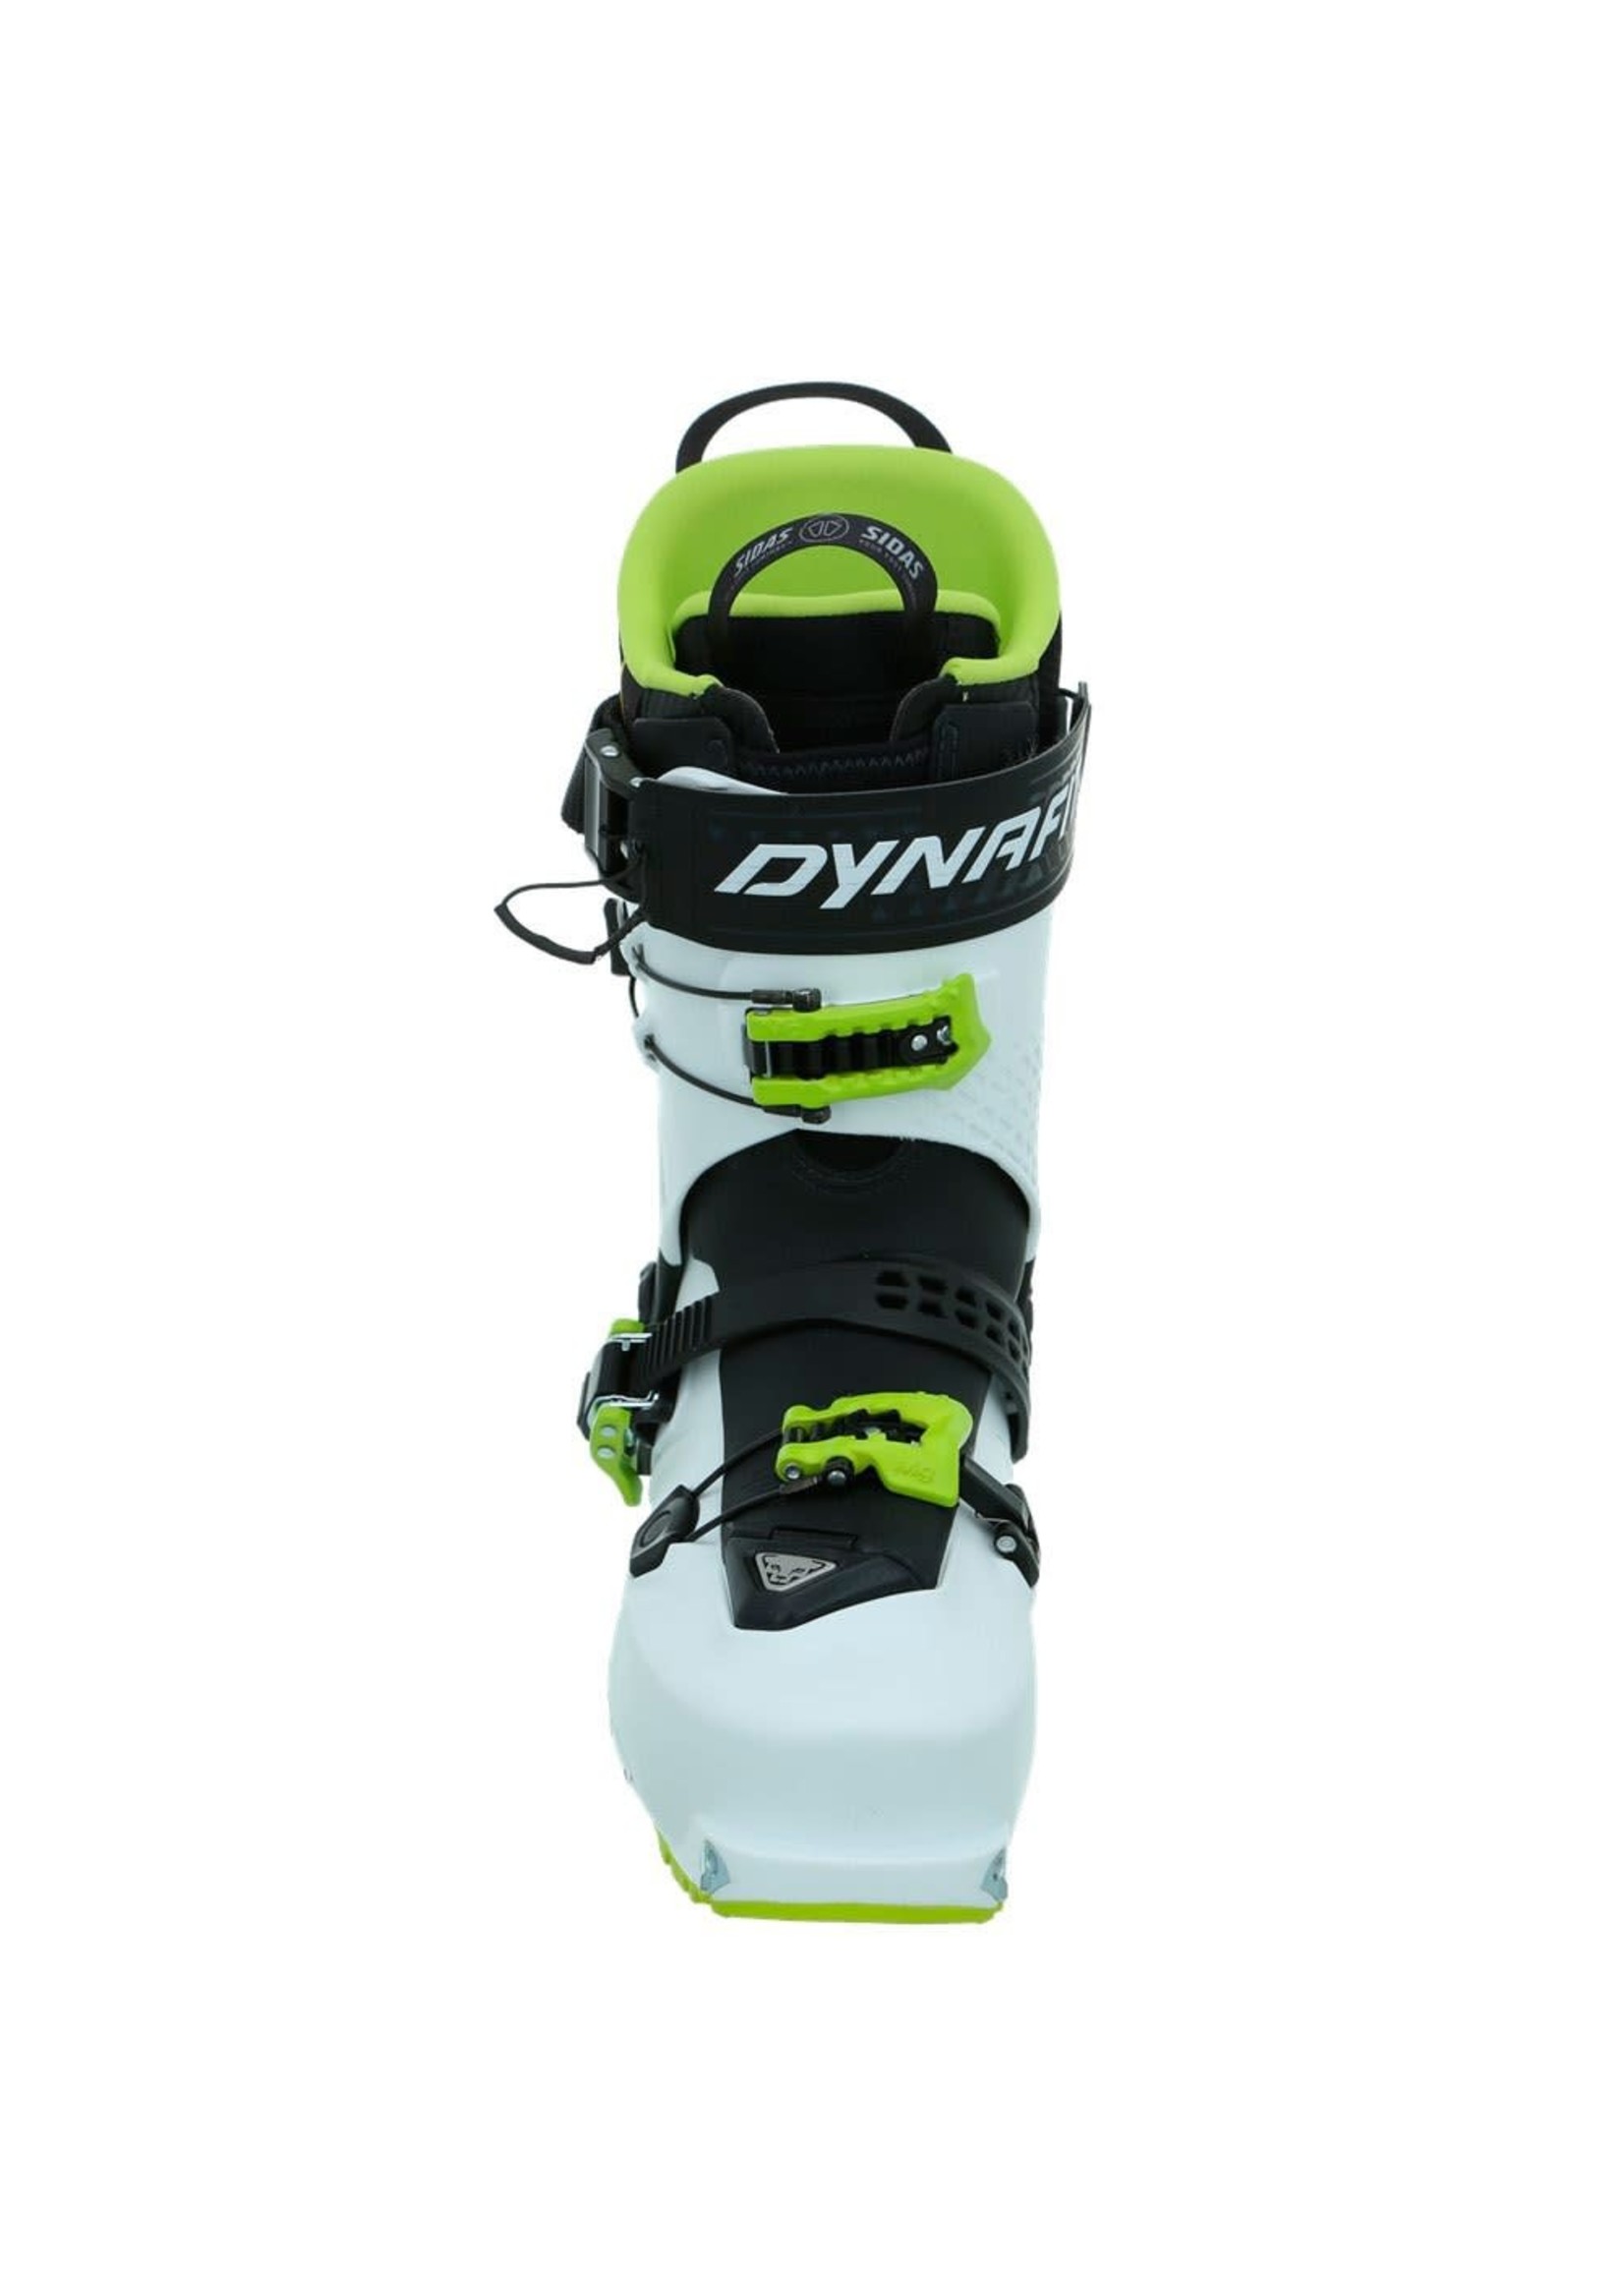 Dynafit Dynafit Hoji Free 110 Ski Boots - Unisex